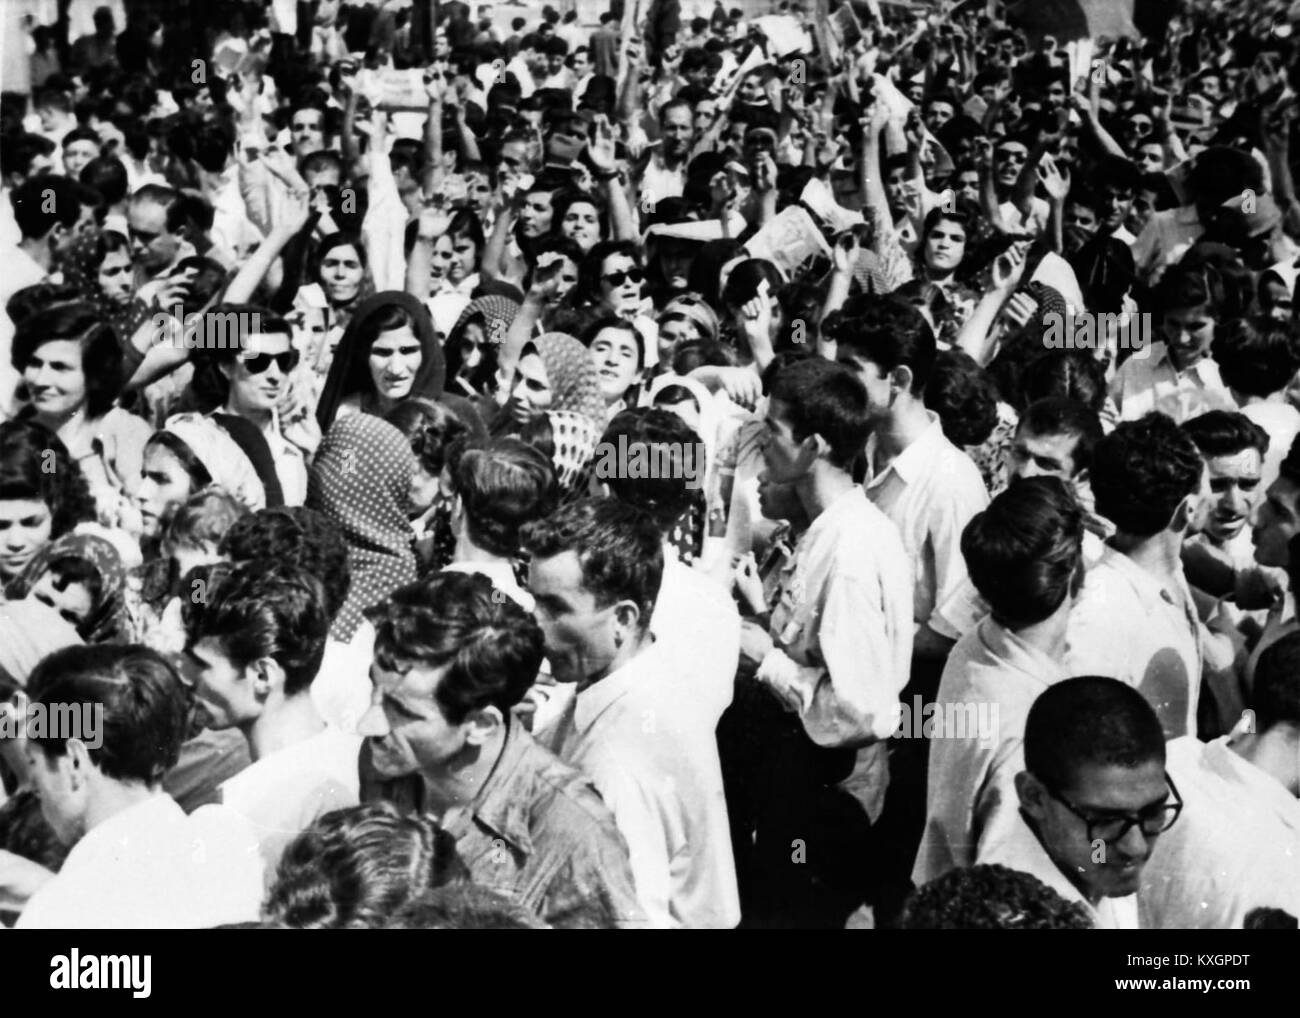 1953 Iranian coup d'état - Women Stock Photo - Alamy